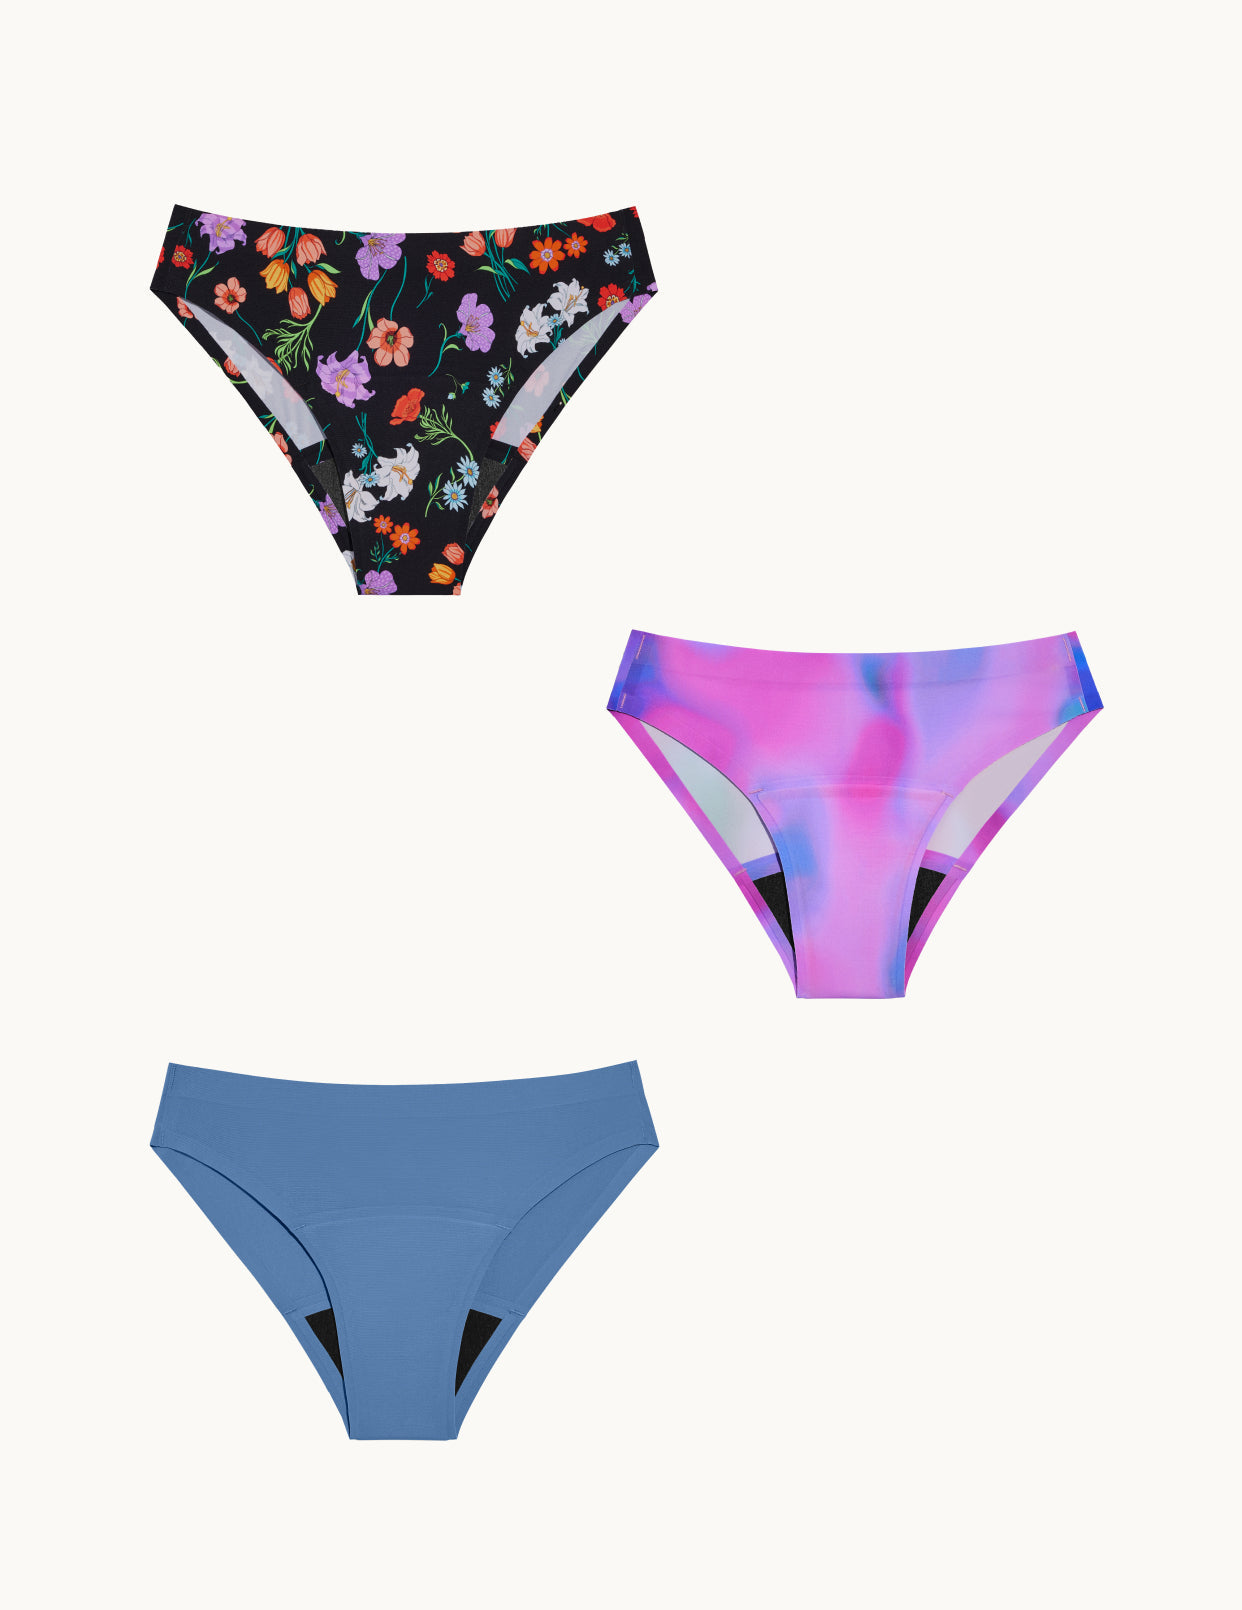 Buy Girls Bikini Period Underwear - KT By Knix